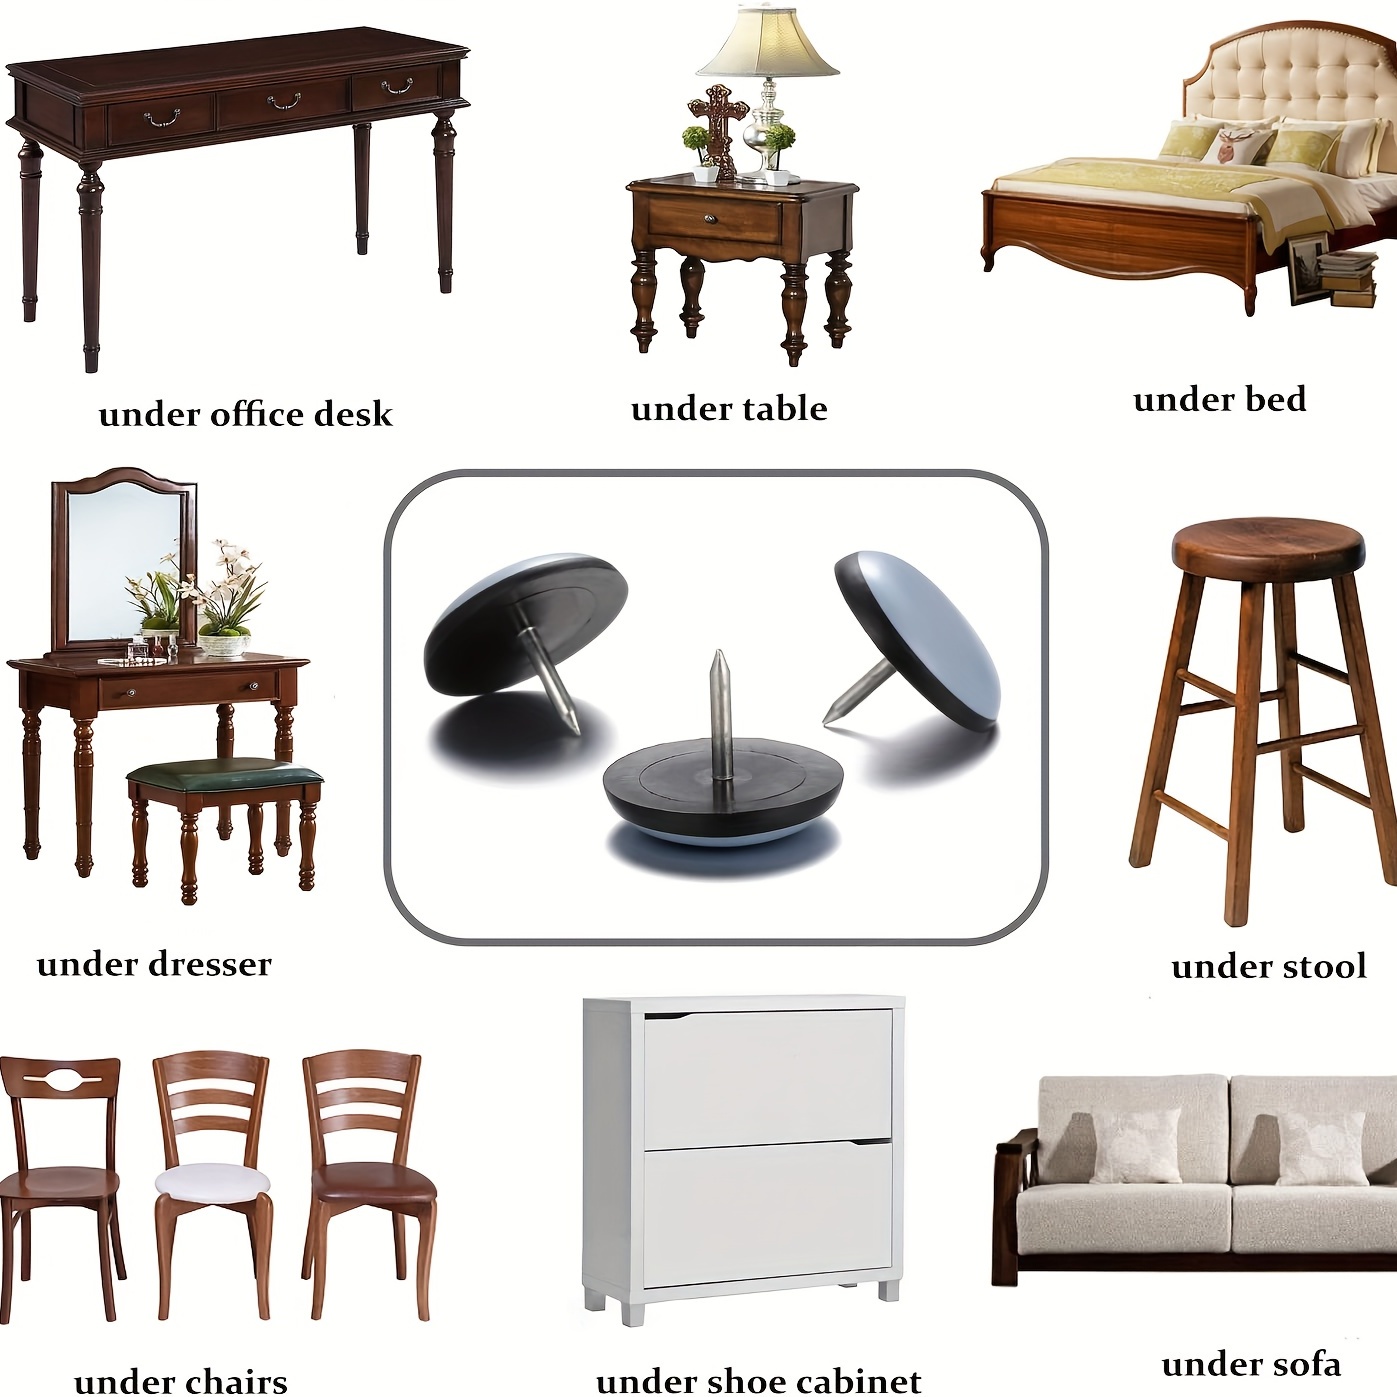 24 deslizadores de teflón para muebles, deslizadores de sillas redondas de  1-1/2 pulgadas, deslizadores de muebles con rosca para suelos de madera